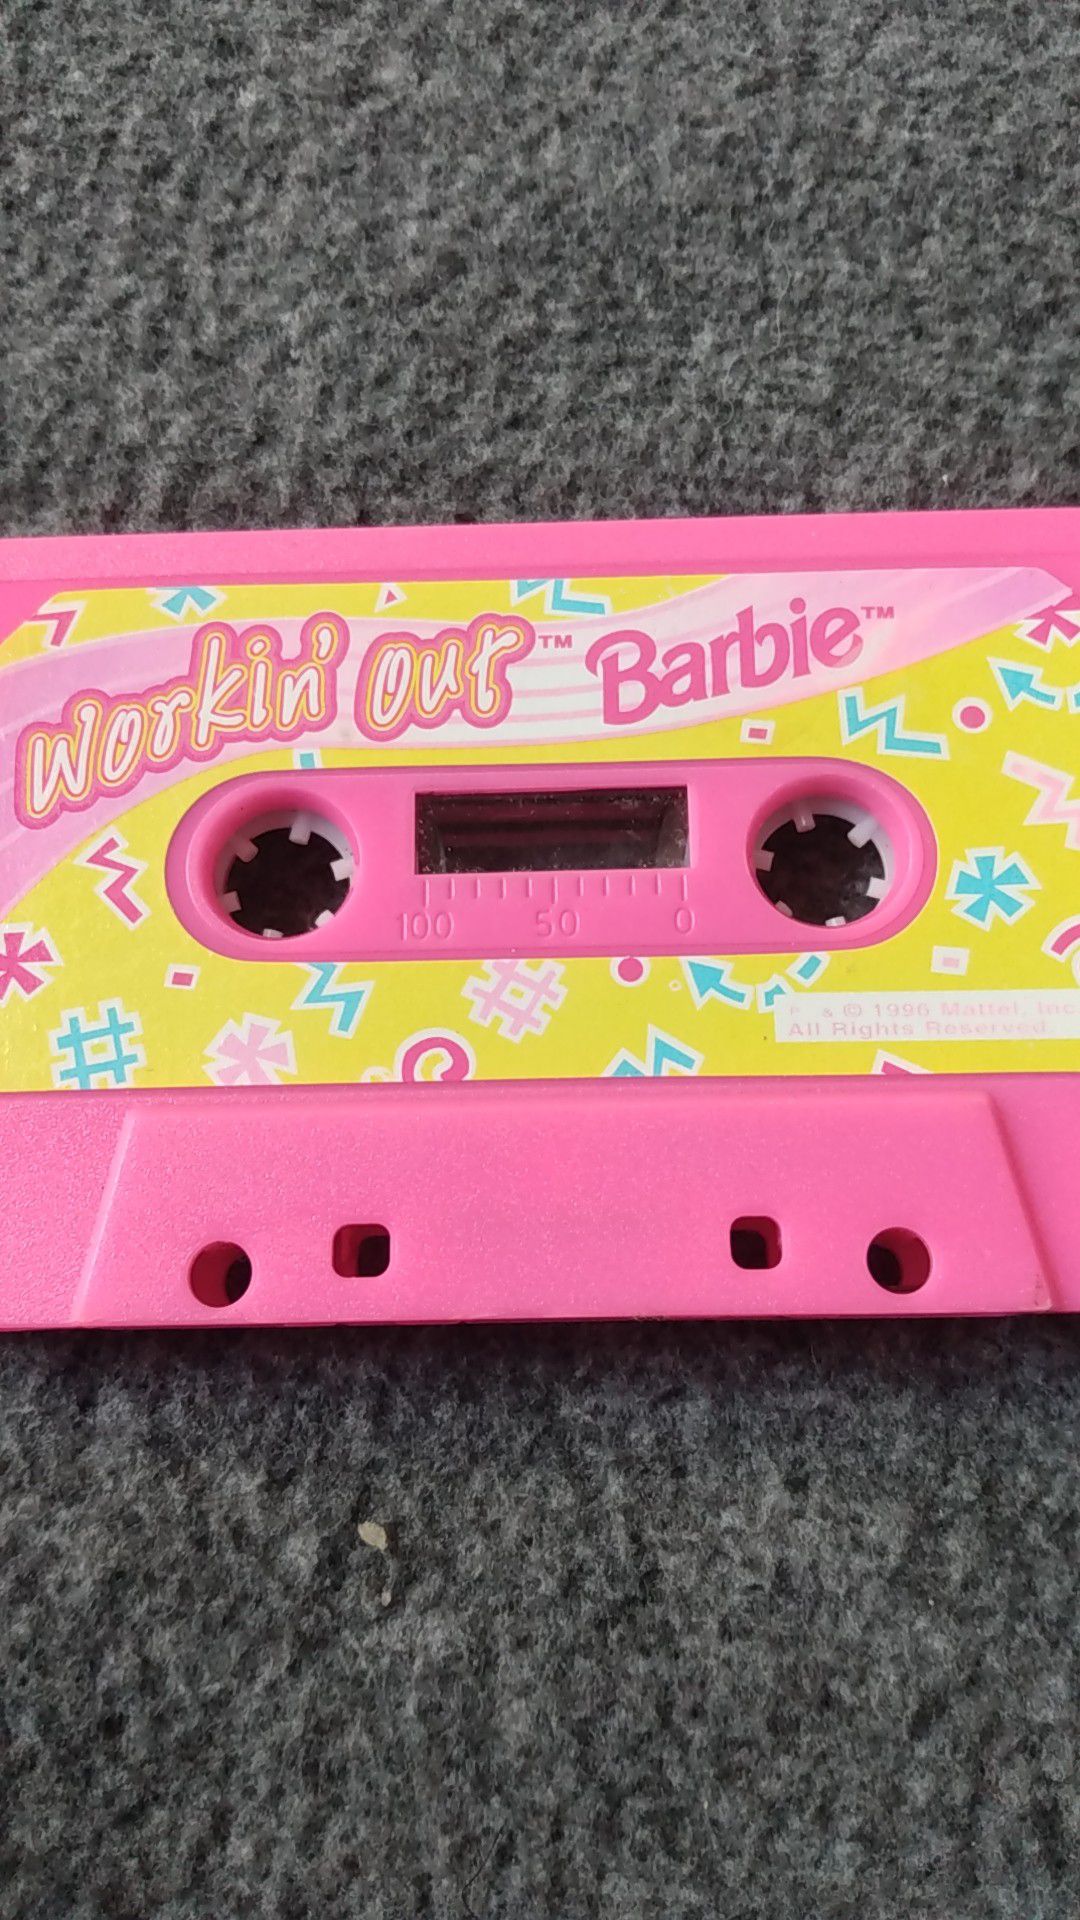 gat Middag eten Ben depressief 1996 Barbie workout cassette for Sale in San Diego, CA - OfferUp